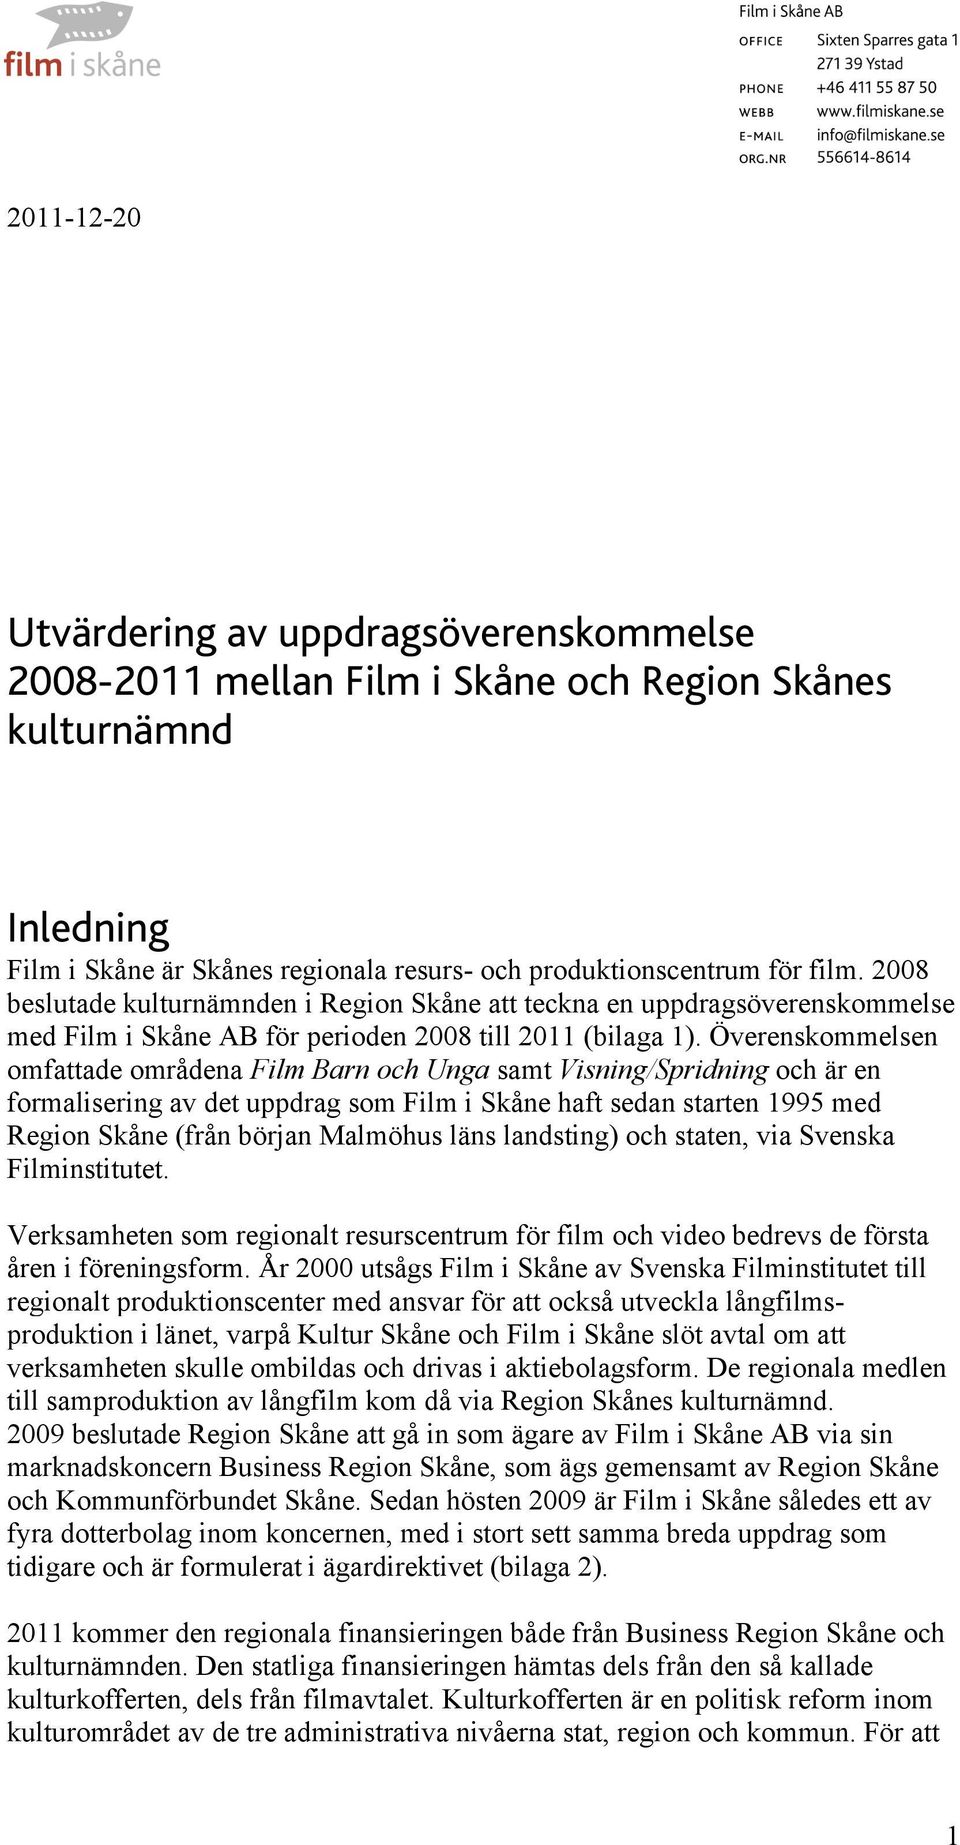 Överenskommelsen omfattade områdena Film Barn och Unga samt Visning/Spridning och är en formalisering av det uppdrag som Film i Skåne haft sedan starten 1995 med Region Skåne (från början Malmöhus